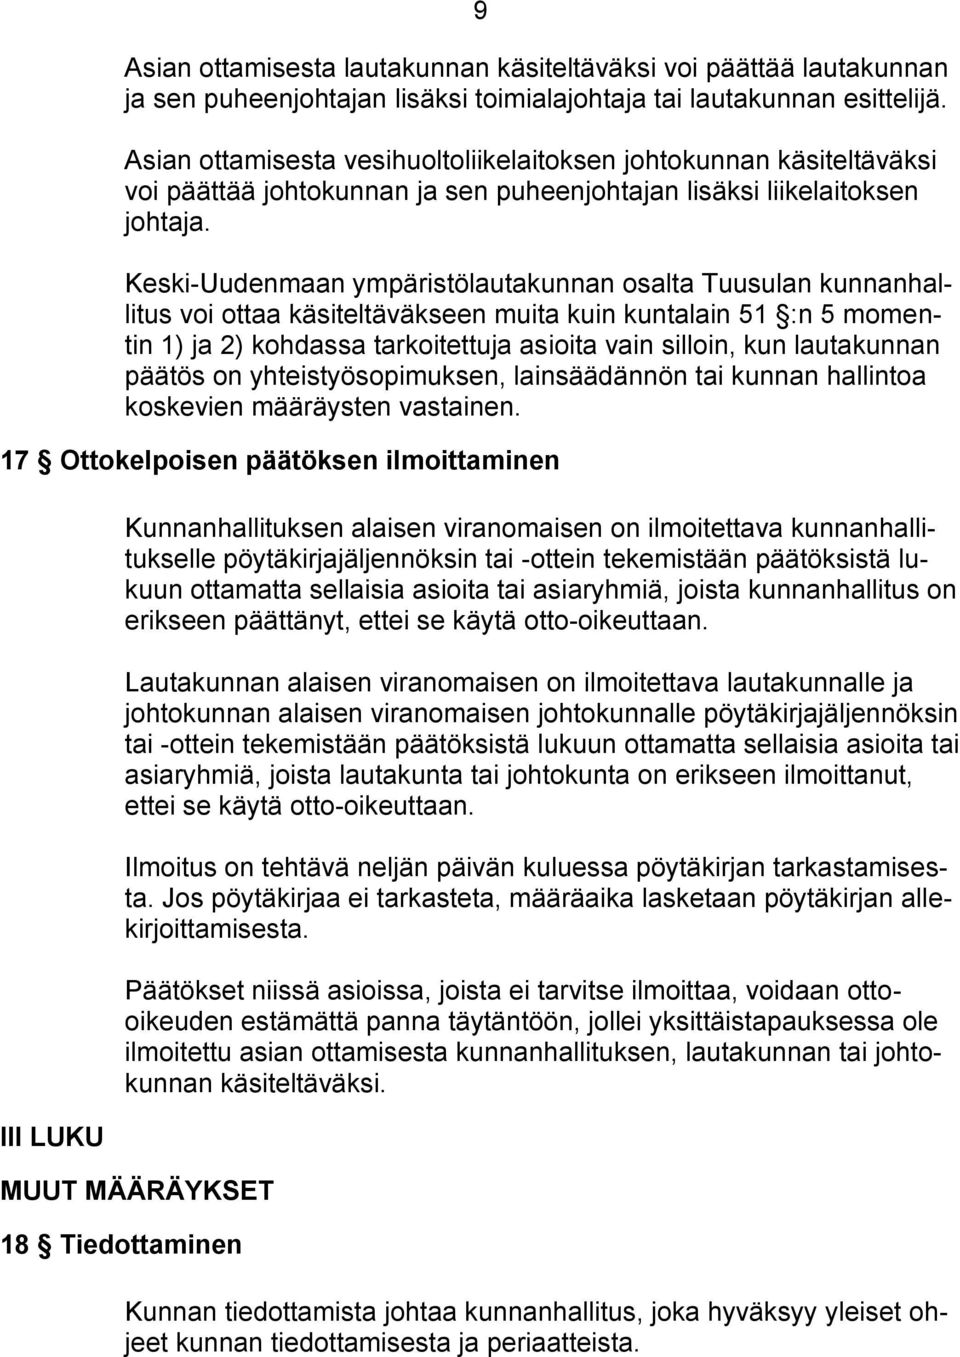 Keski-Uudenmaan ympäristölautakunnan osalta Tuusulan kunnanhallitus voi ottaa käsiteltäväkseen muita kuin kuntalain 51 :n 5 momentin 1) ja 2) kohdassa tarkoitettuja asioita vain silloin, kun